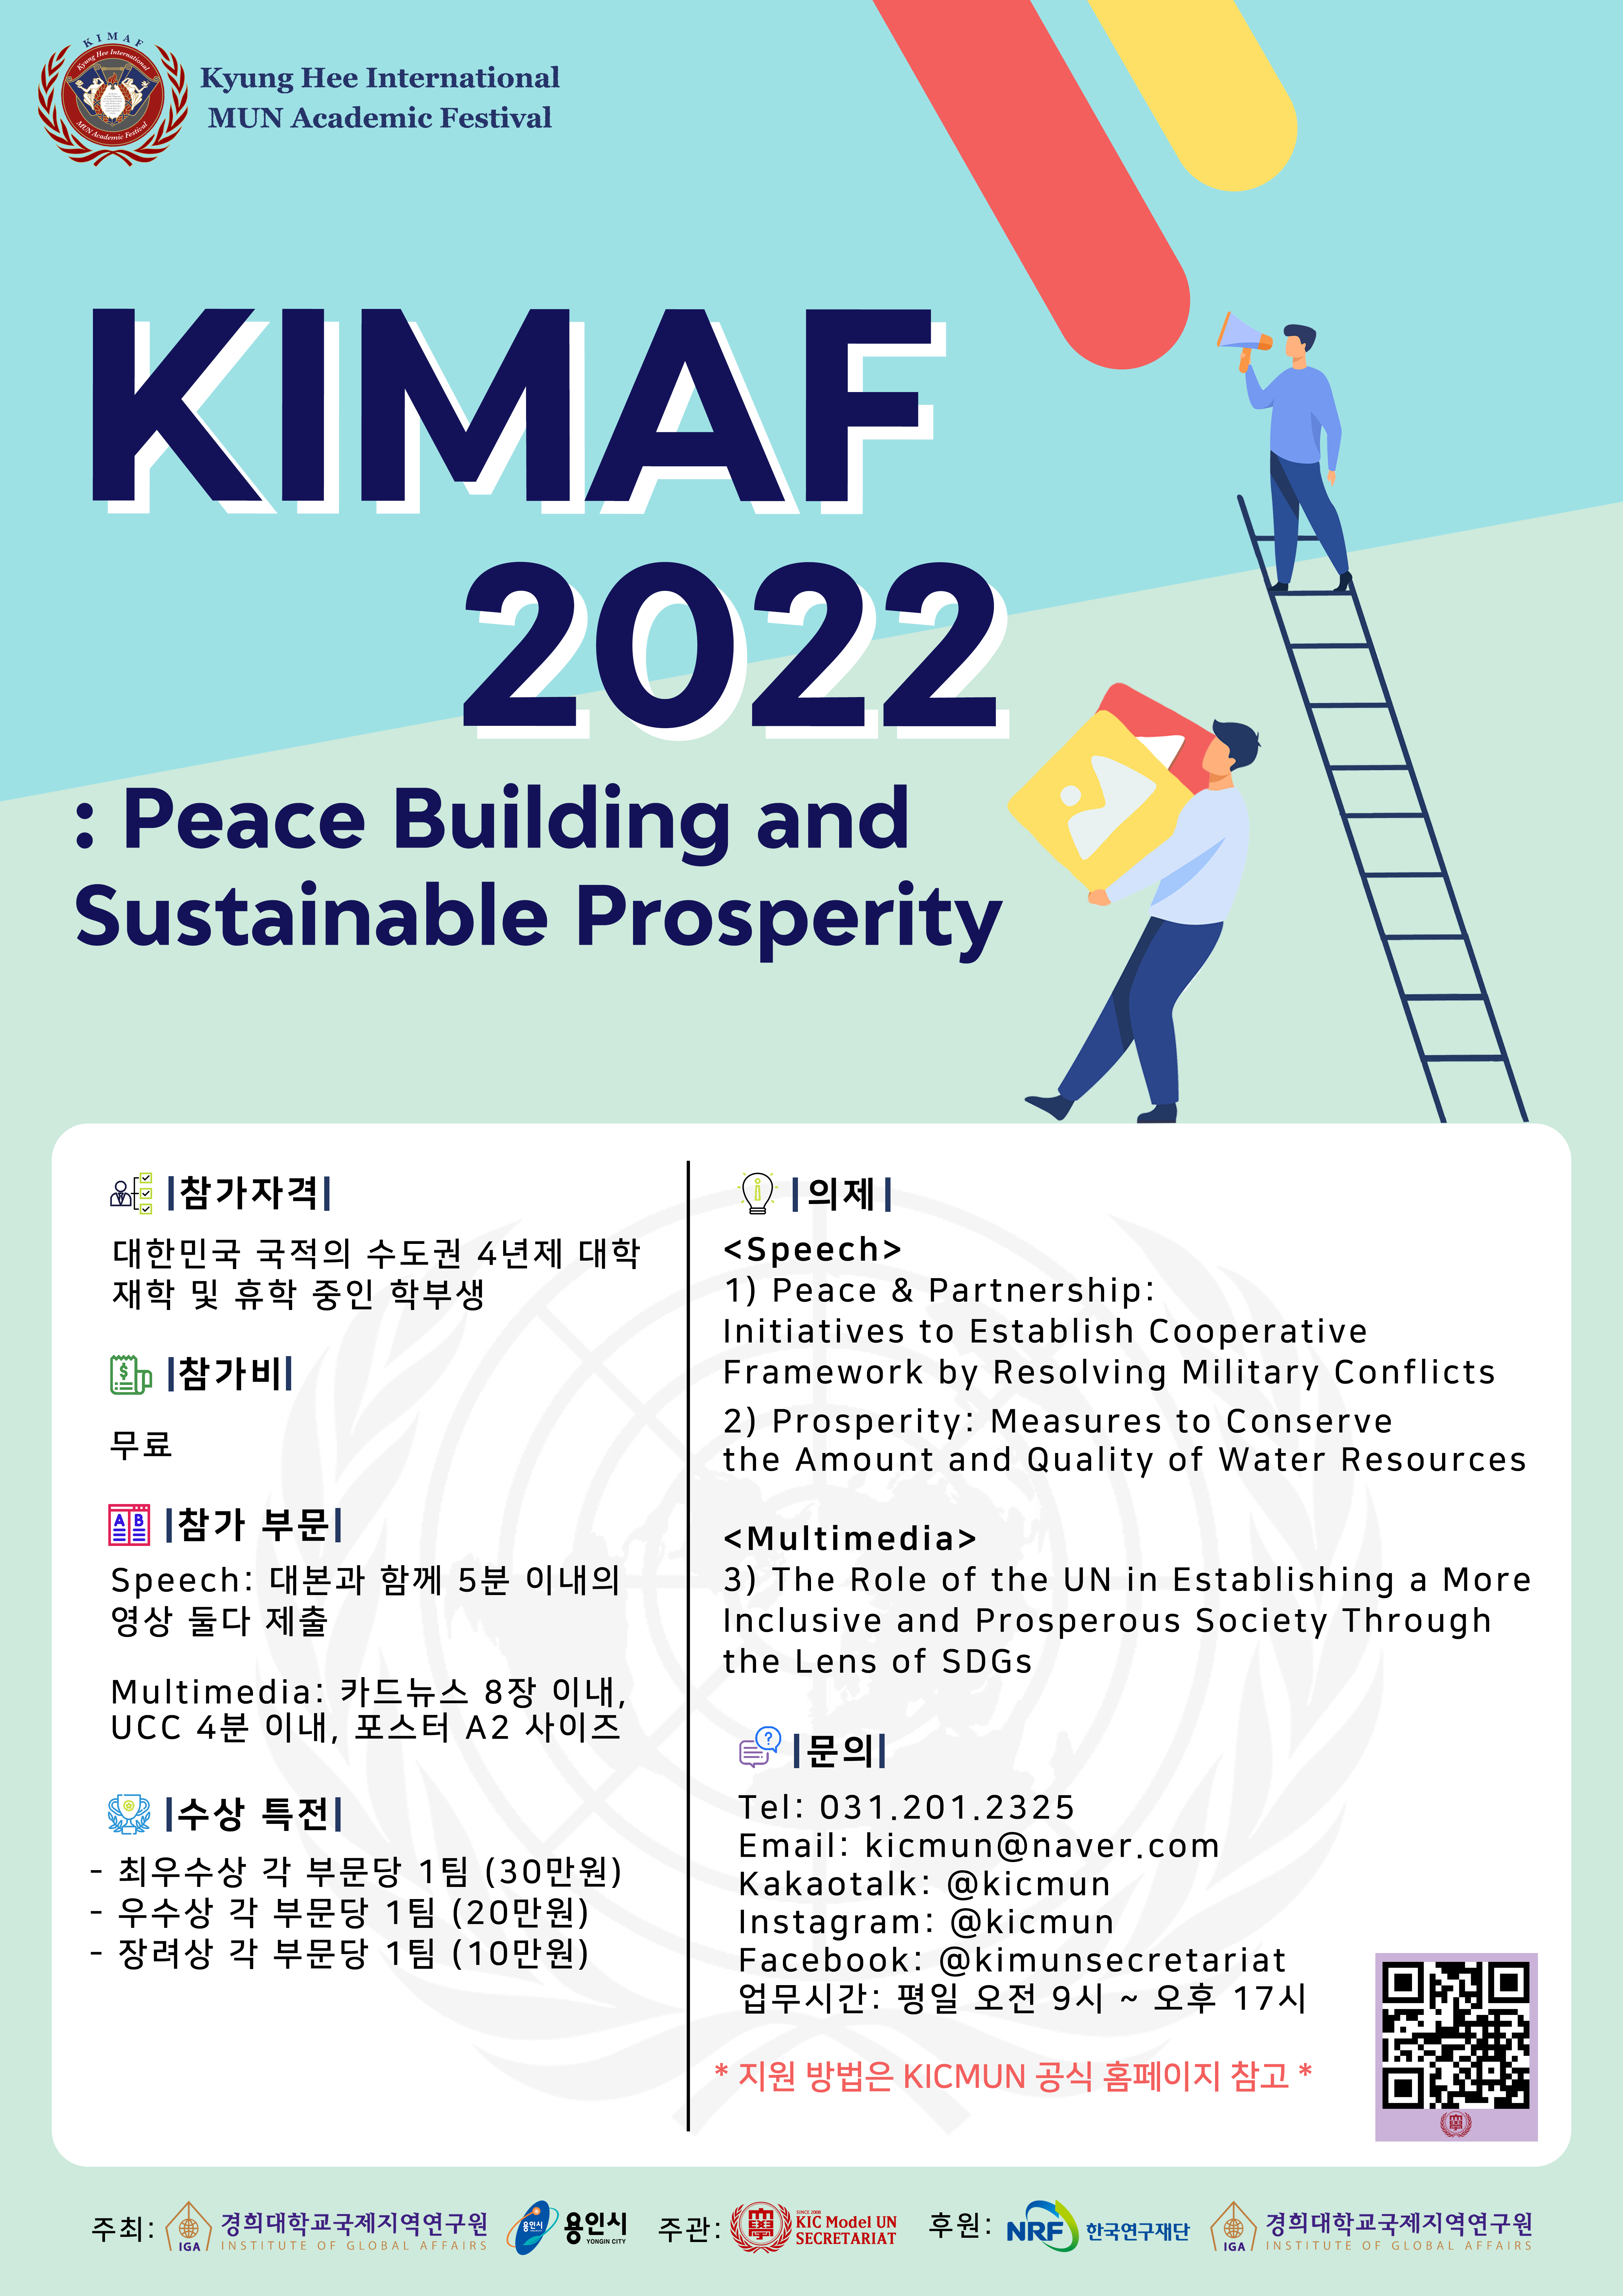 경희대학교 모의유엔 사무국 학술행사_KIMAF 2022 참가자 모집